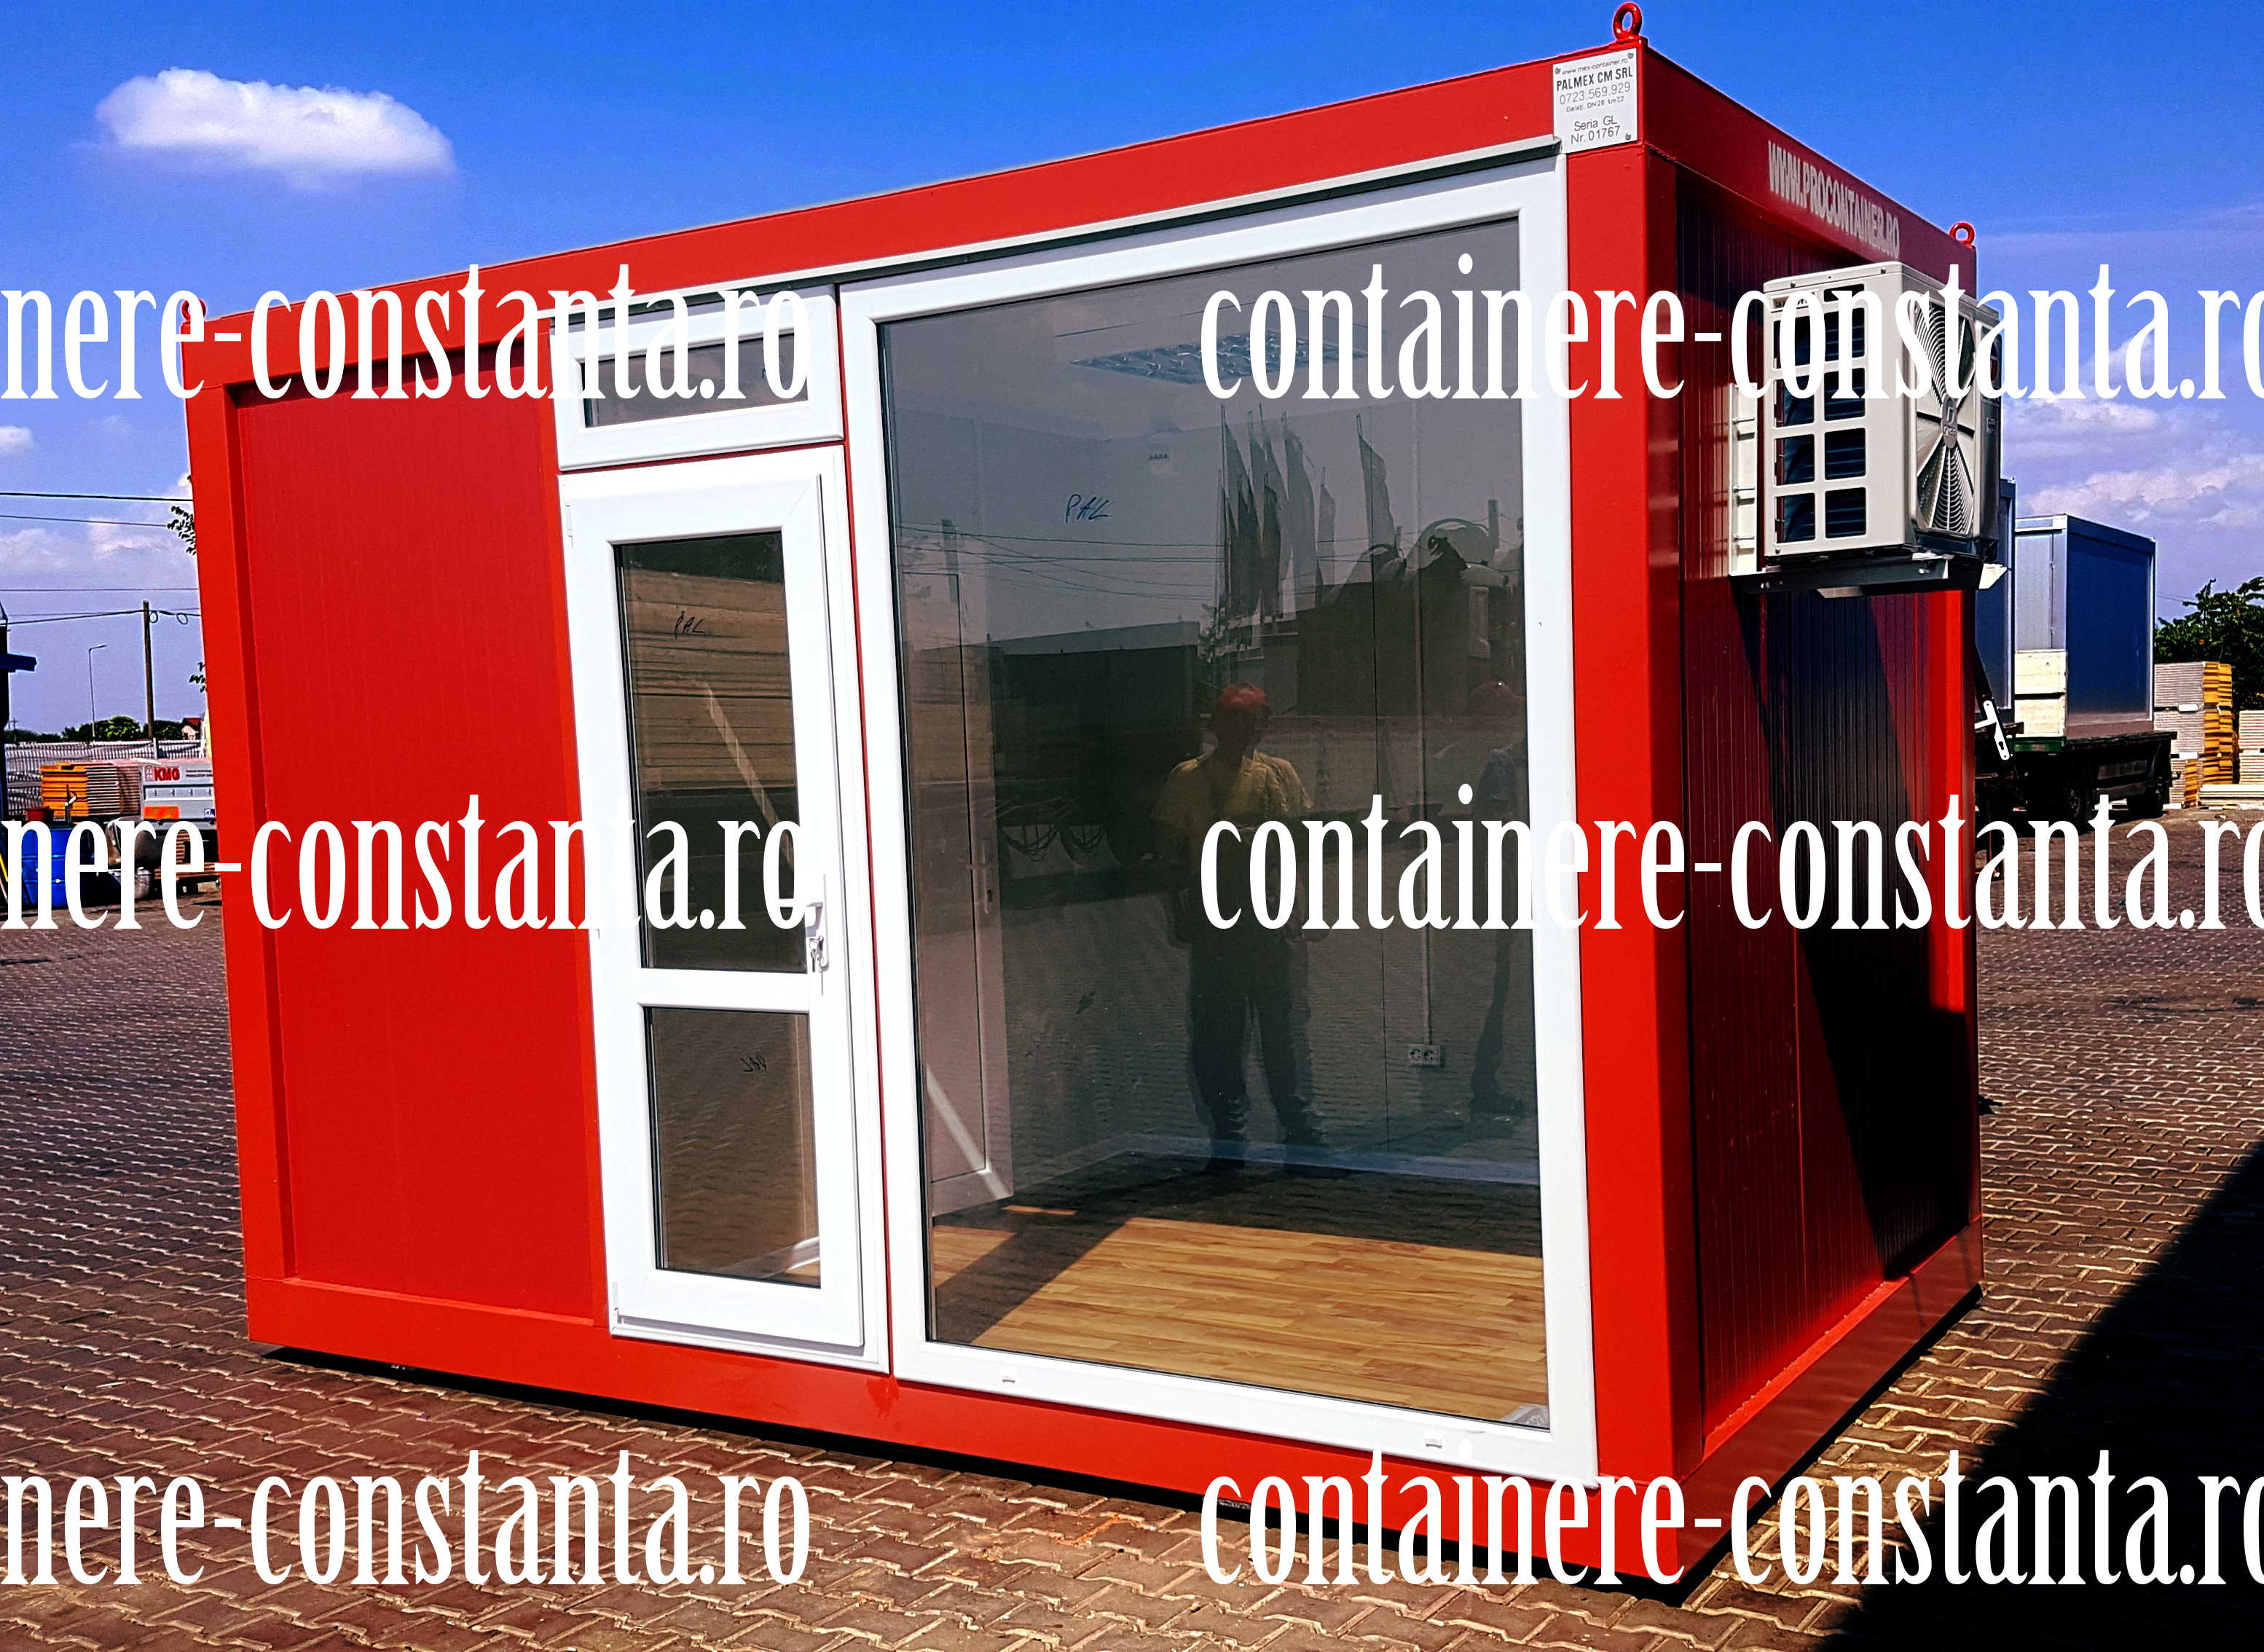 containee Constanta